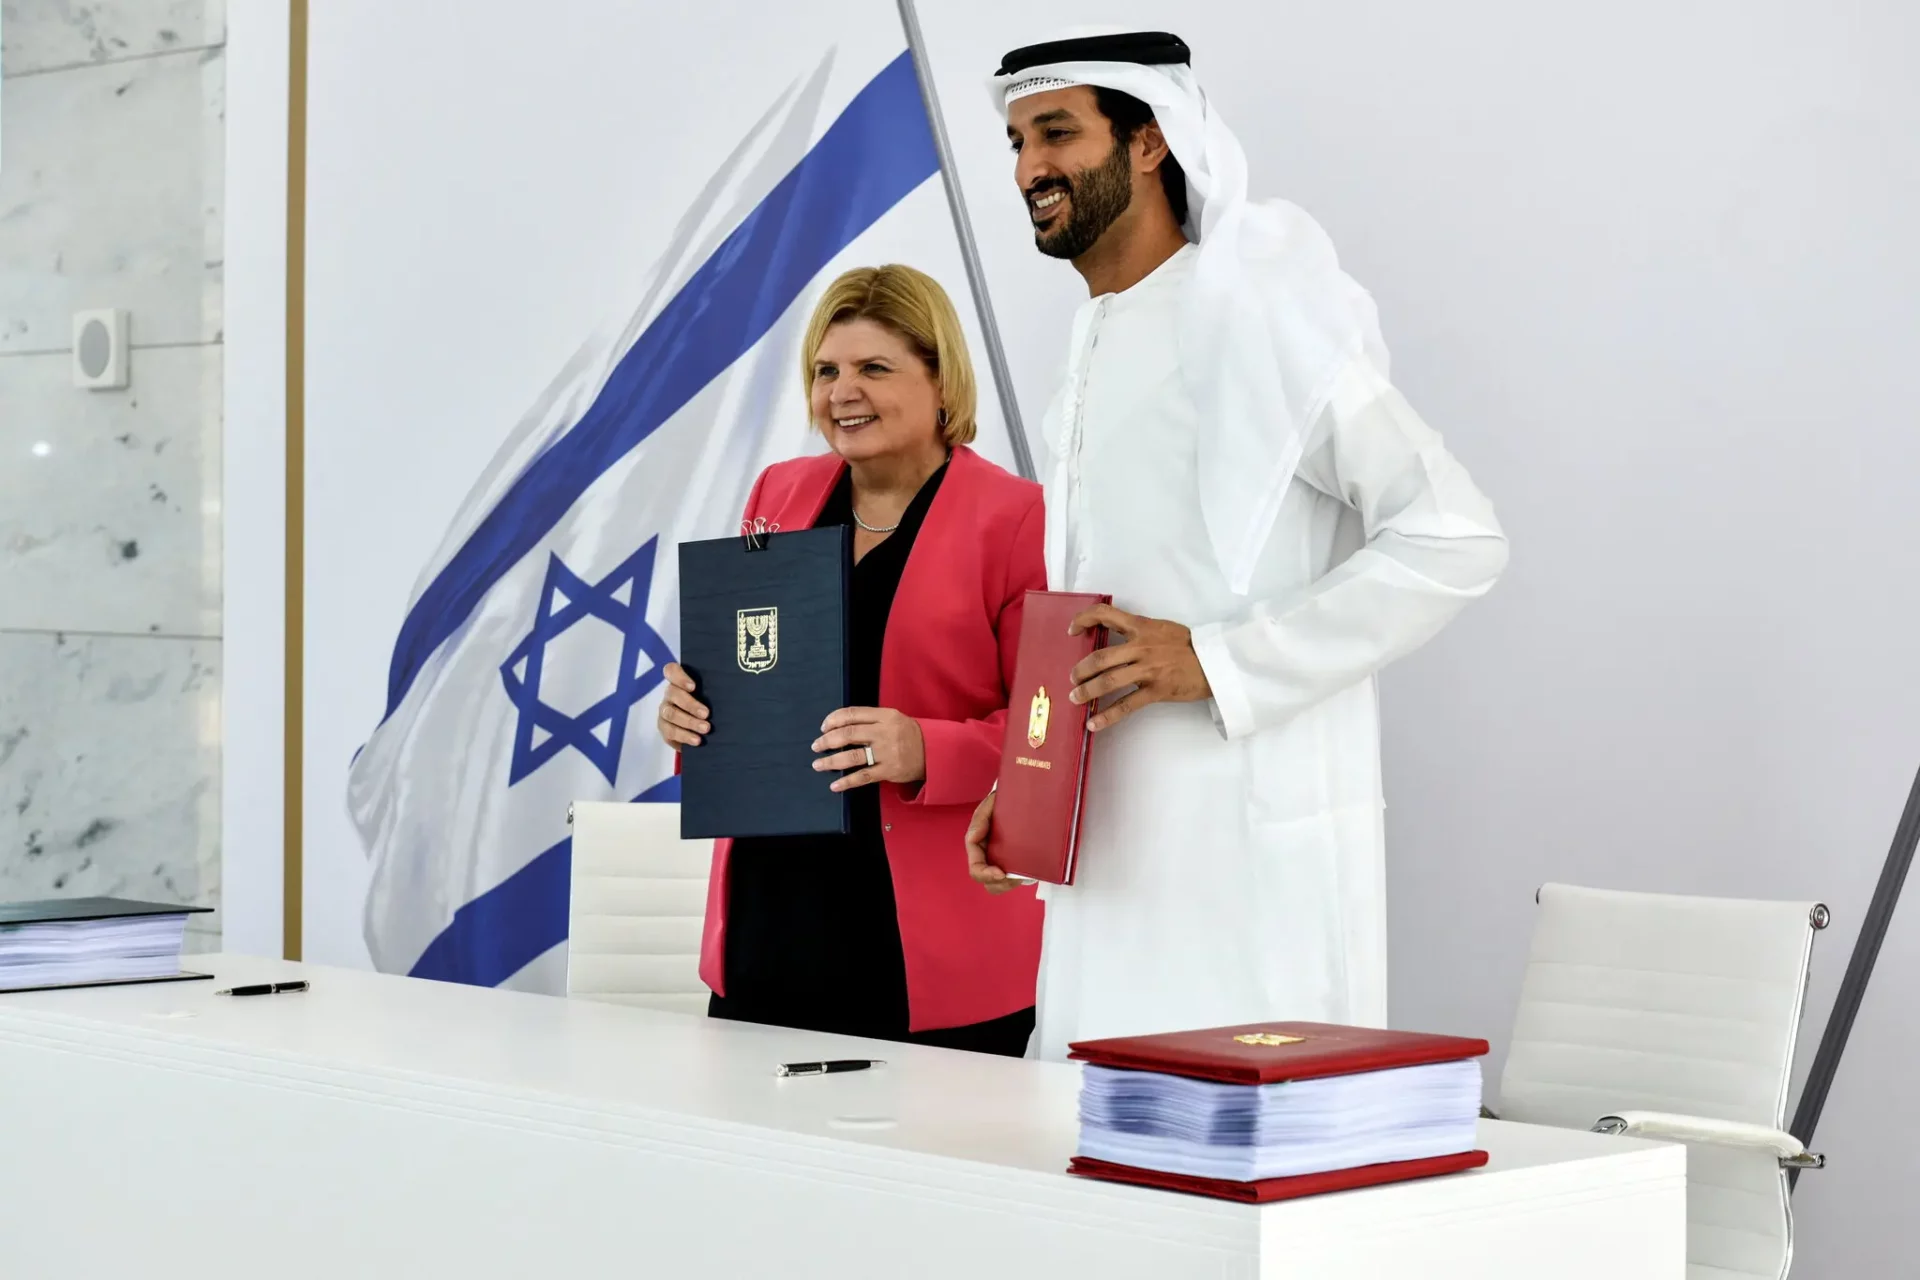 وفد إسرائيلي يزور الإمارات الأحد للمشاركة في “منتدى النقب”